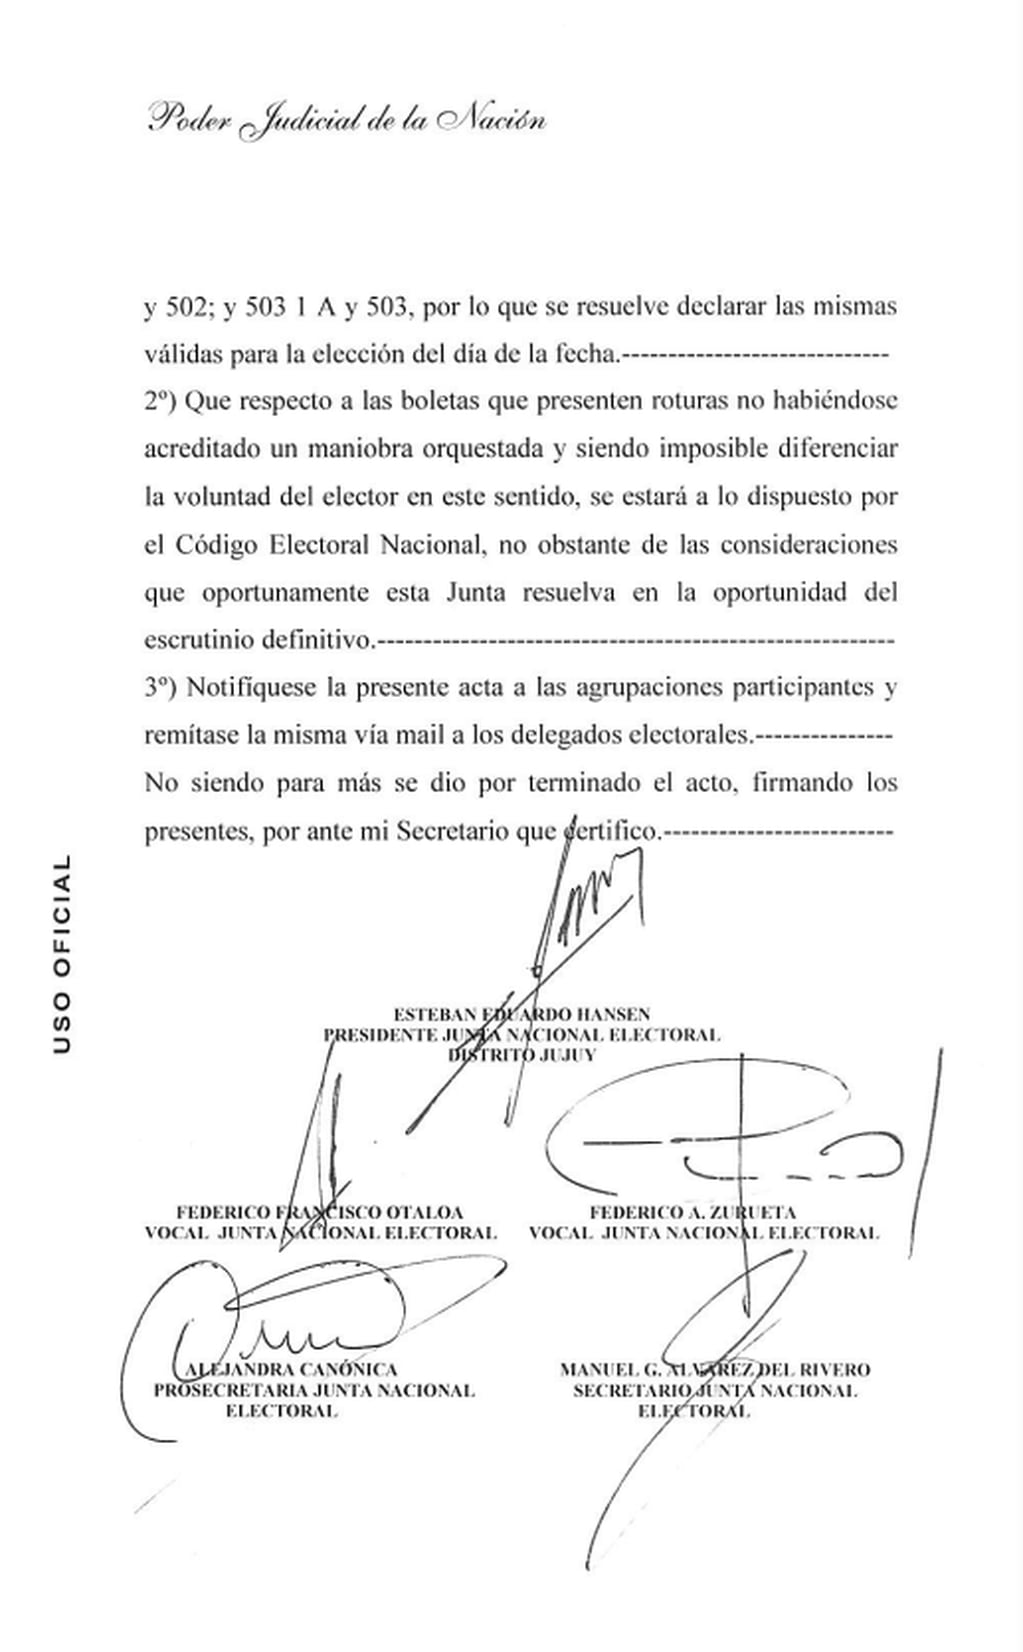 El acta de la Junta Nacional Electoral - Distrito Jujuy de la audiencia en la que resolvió validar las boletas de las PASO para los comicios generales de este domingo.